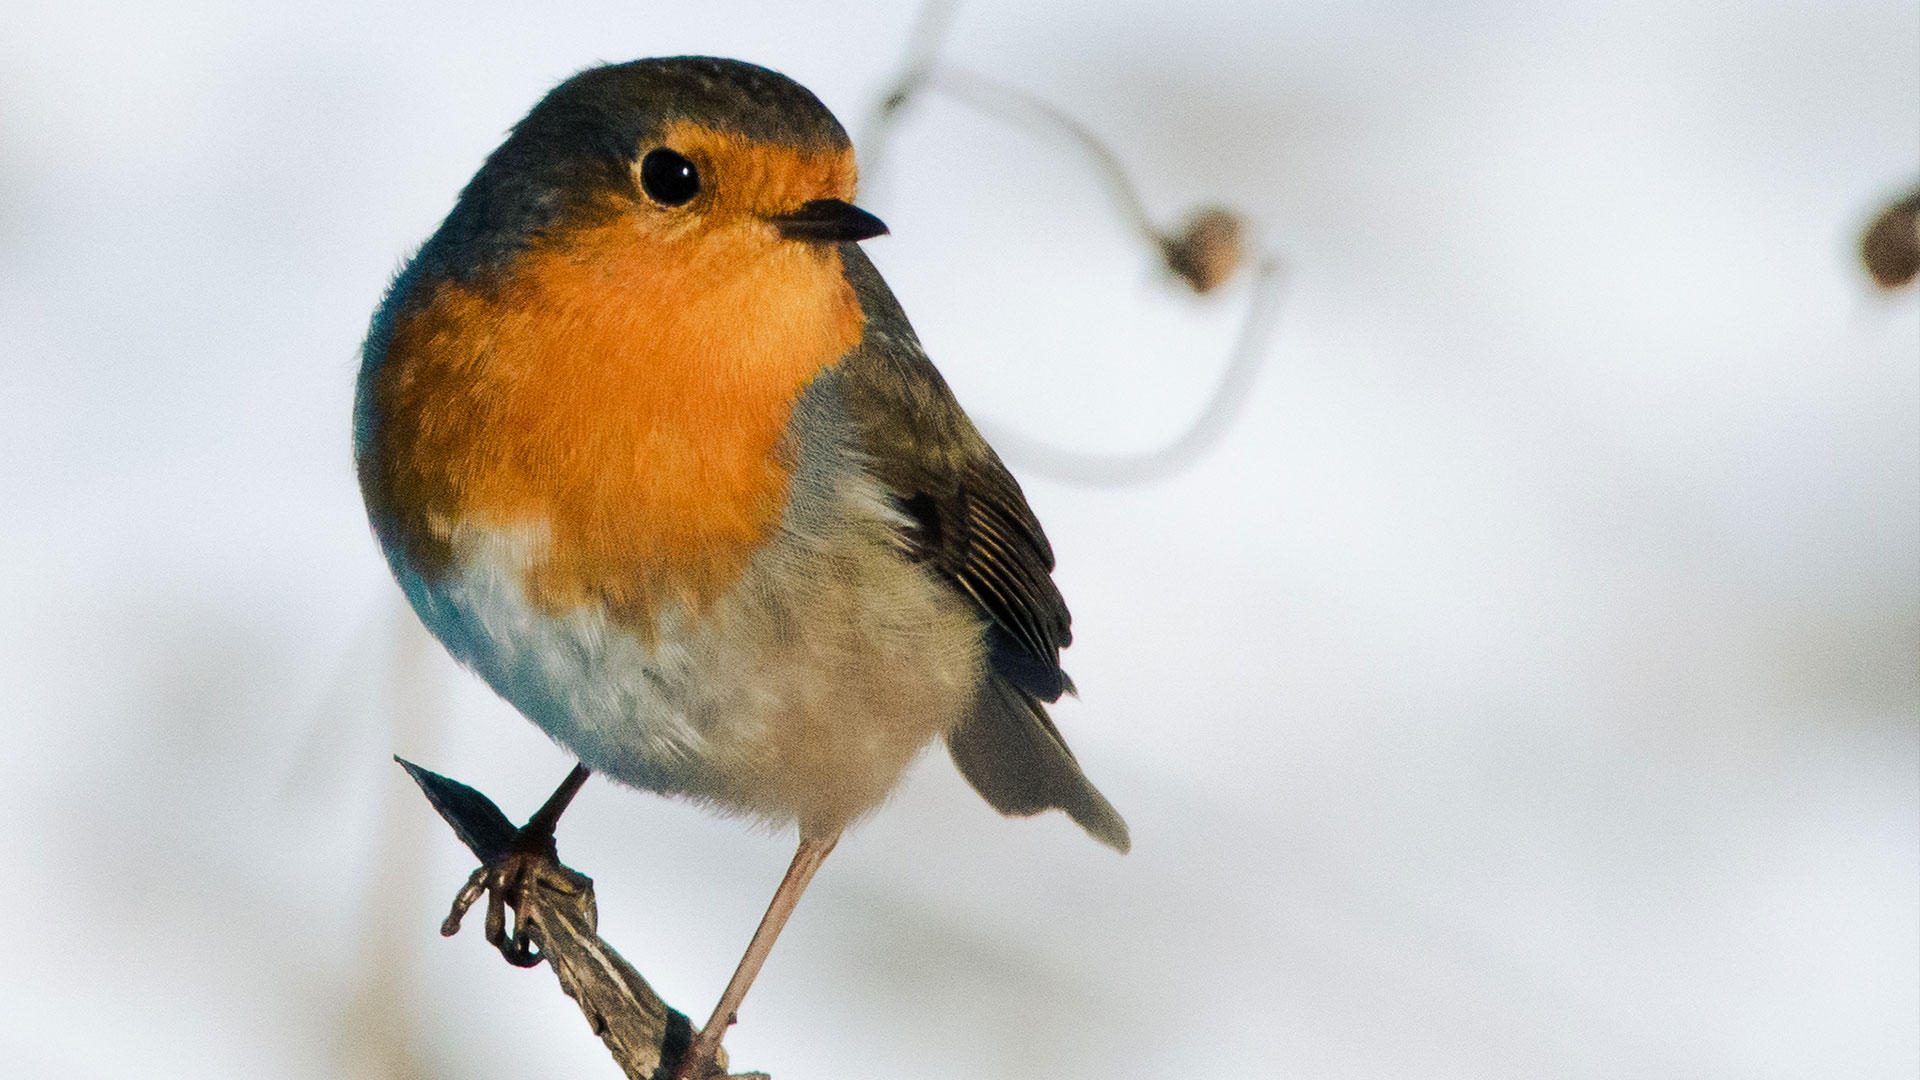 als inoffizieller Nationalvogel Großbritanniens mit Weihnachten in Verbindung gebracht. Es hat bei der Entdeckung und wissenschaftlichen Anerkennung des Magnetsinns eine wichtige Rolle gespielt.